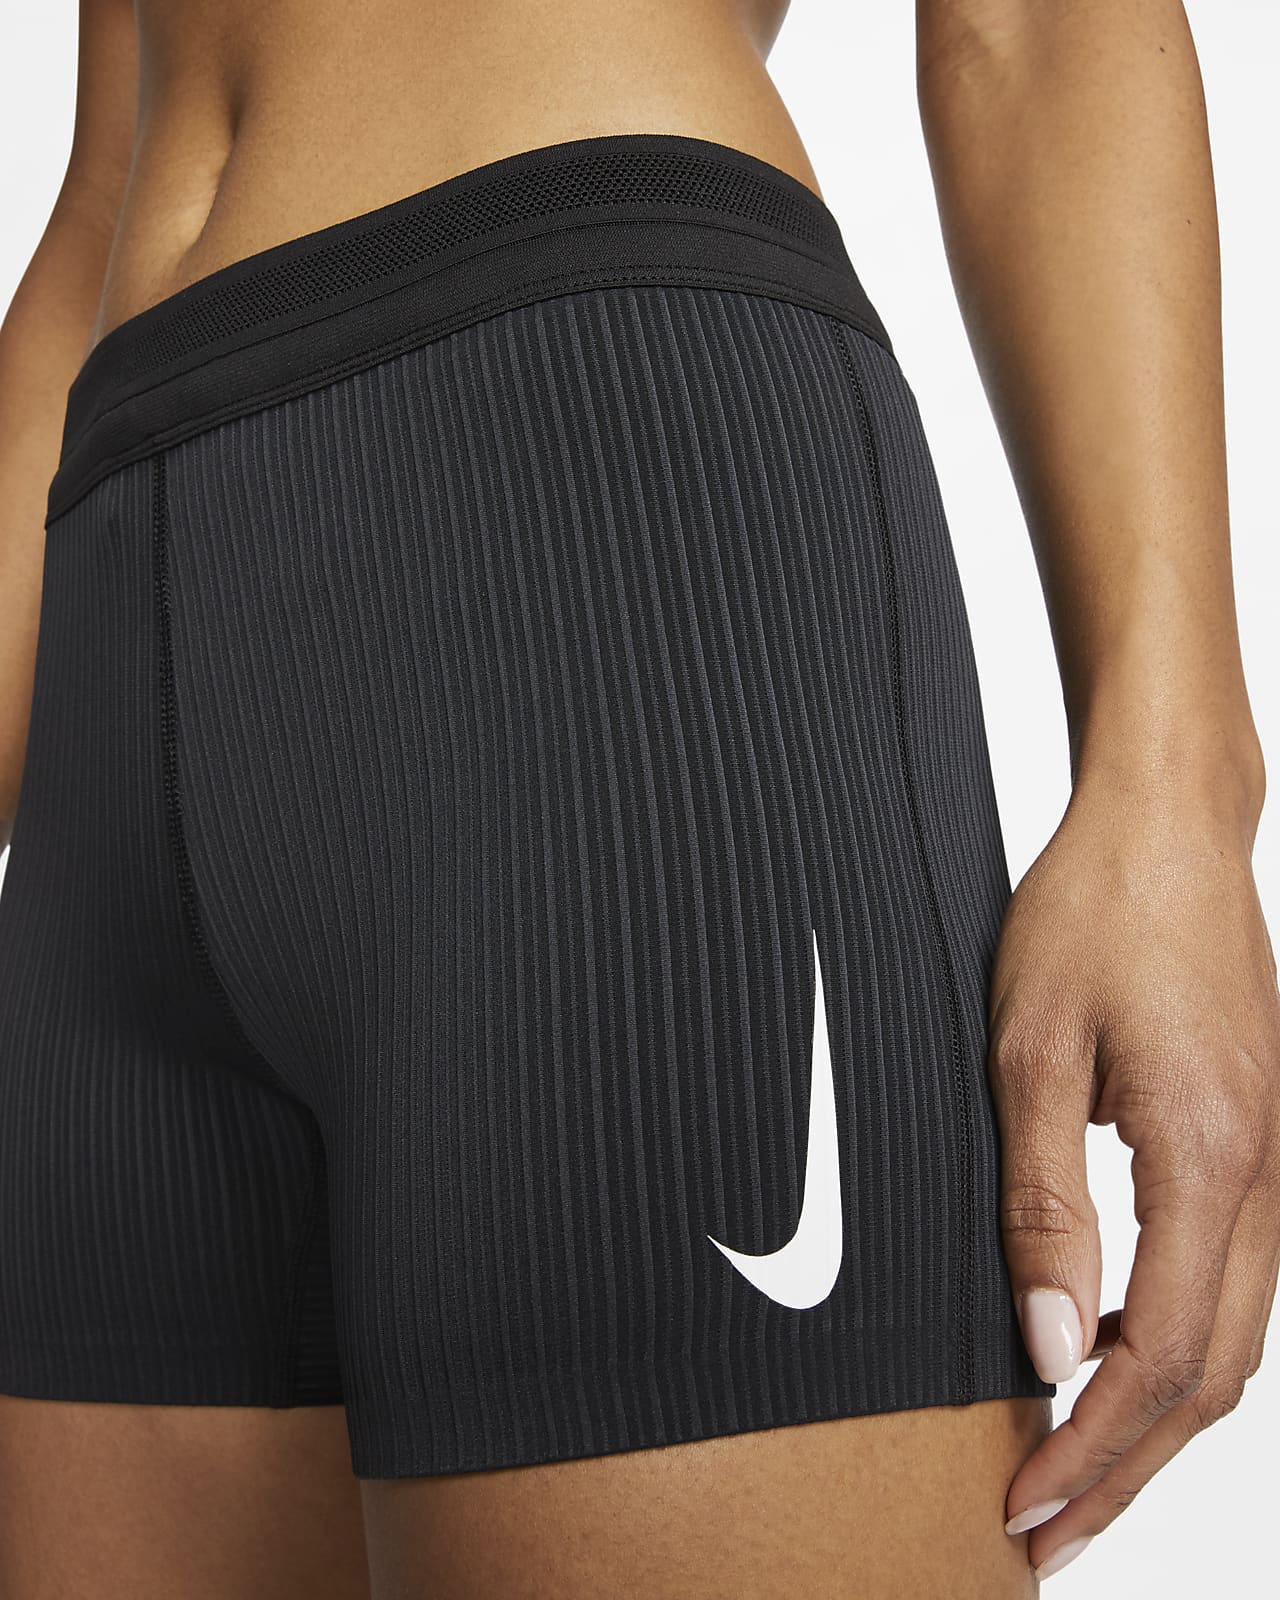 Nike Women's Running Short – PROOZY